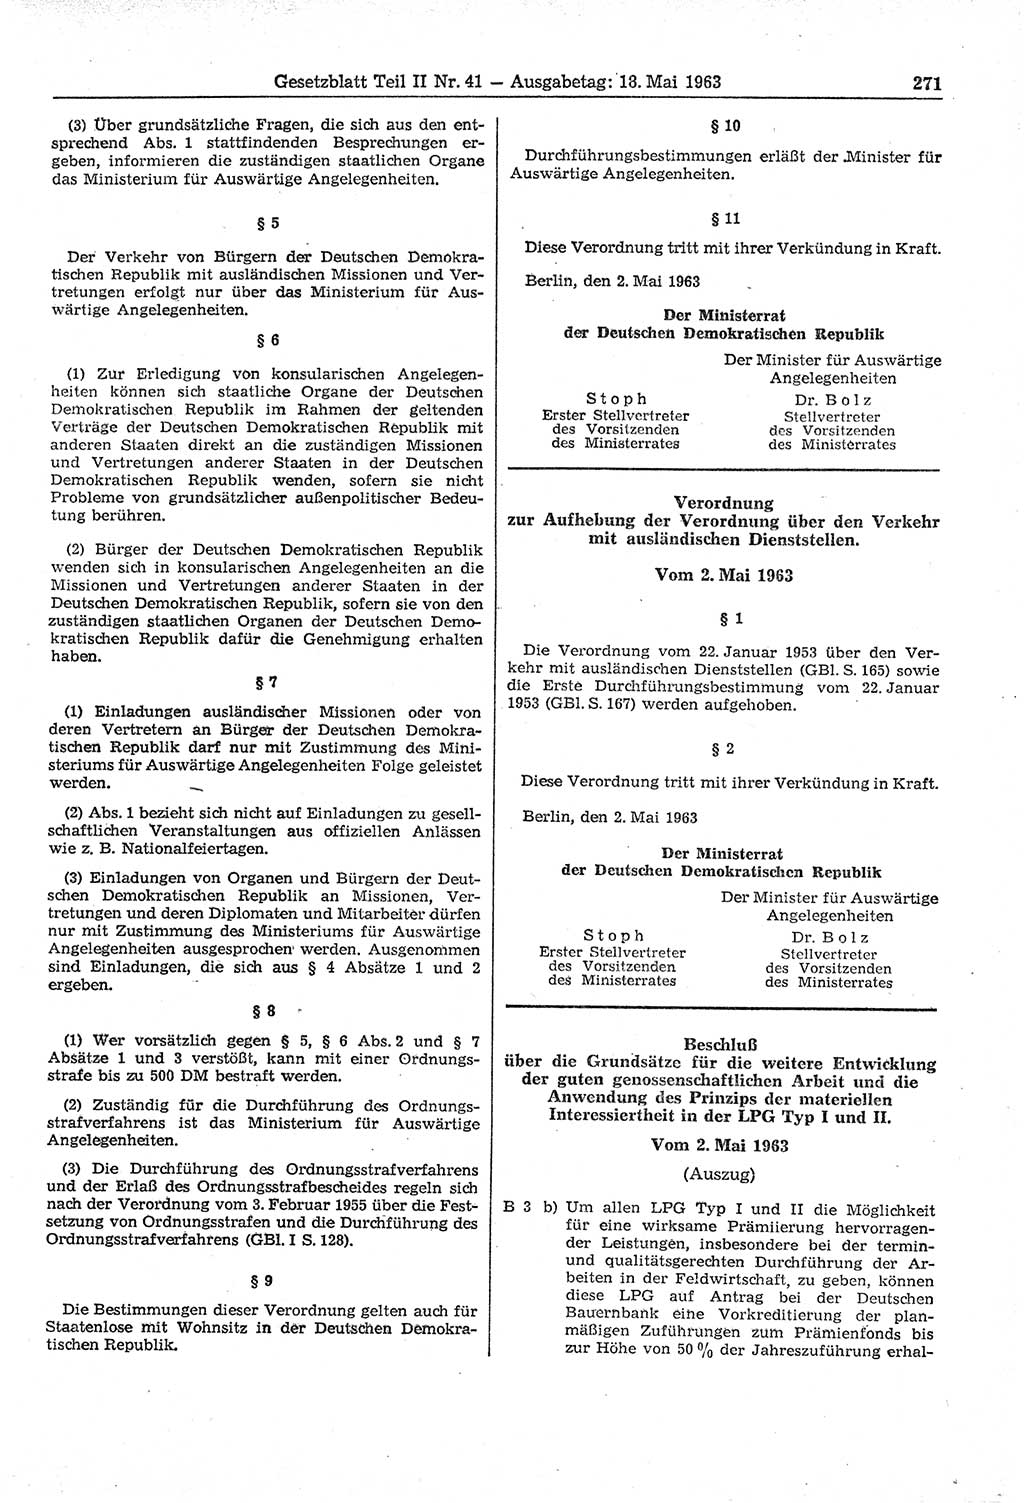 Gesetzblatt (GBl.) der Deutschen Demokratischen Republik (DDR) Teil ⅠⅠ 1963, Seite 271 (GBl. DDR ⅠⅠ 1963, S. 271)